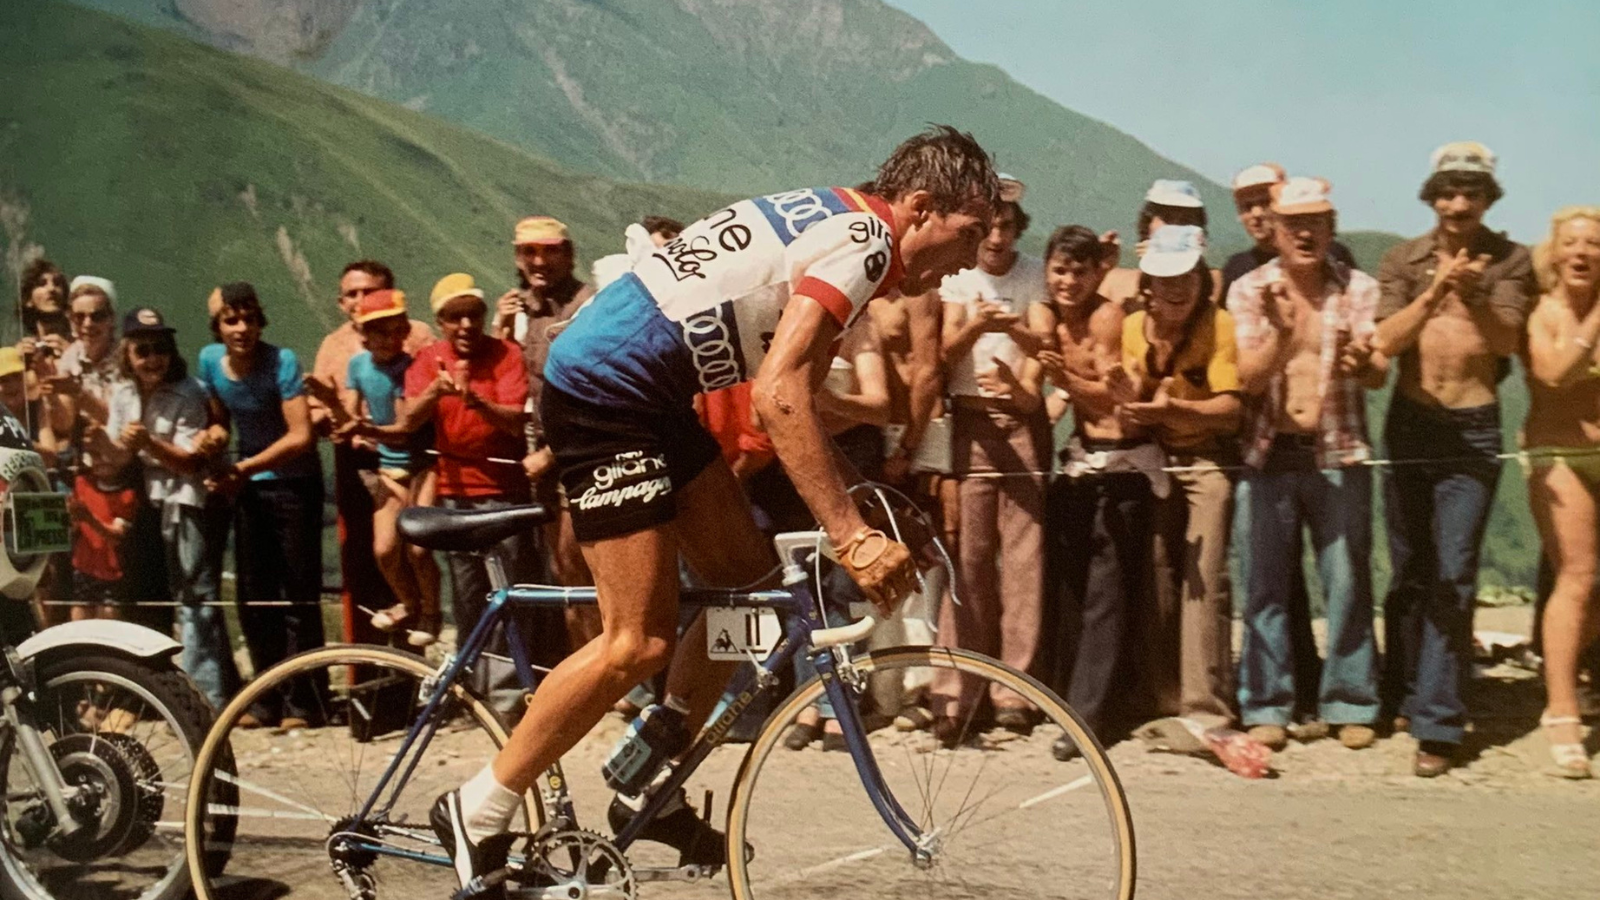 Legendary Belgian climbing specialist cyclist Lucien Van Impe riding solo on the Pla d'Adet at Tour de France 197z